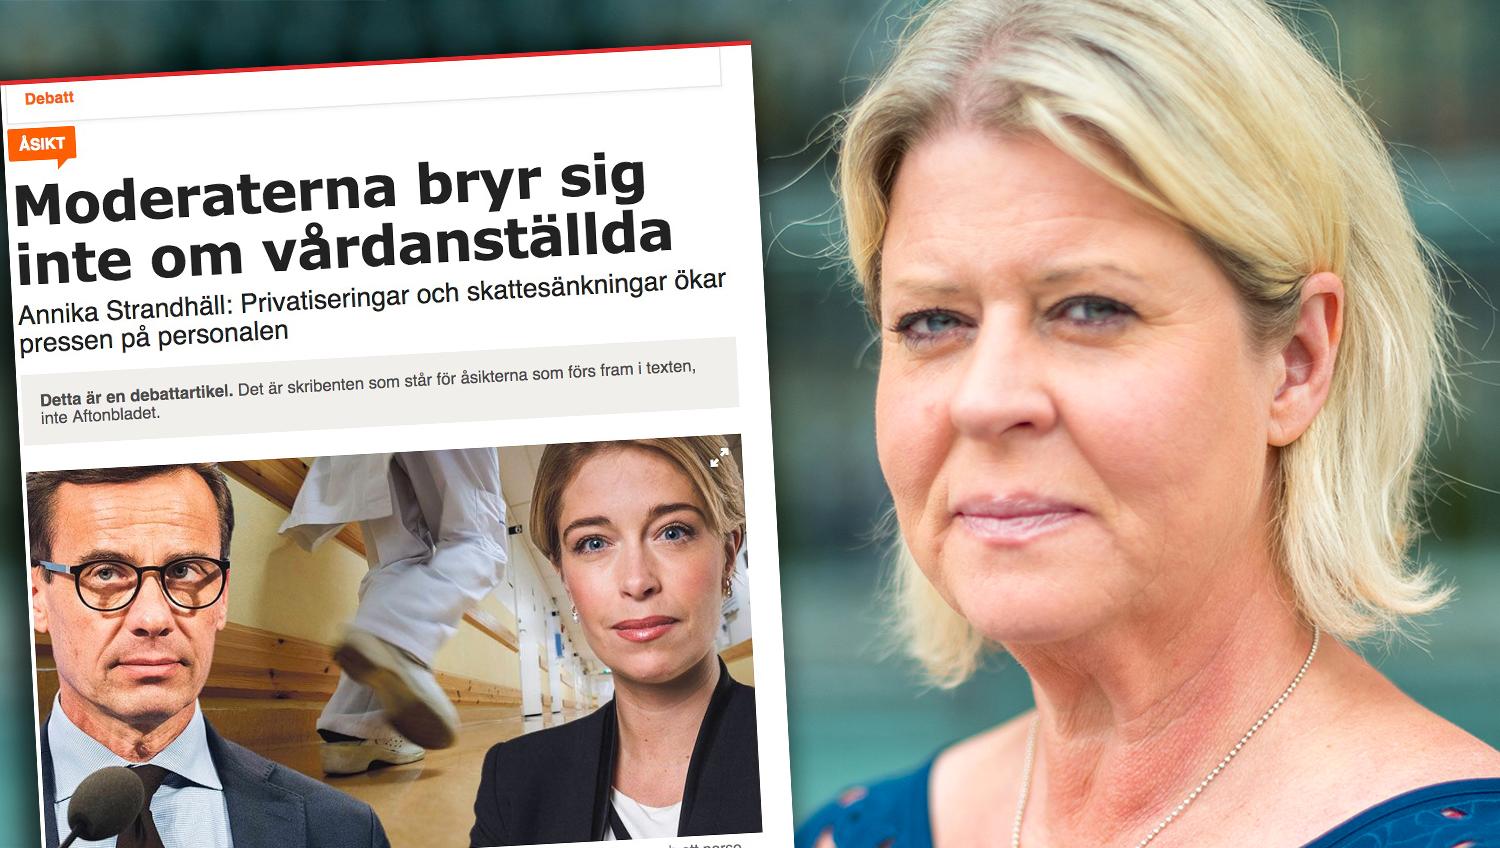 Att korta de långa vårdköerna borde vara sjukvårdsminister Annika Strandhälls främsta uppgift – inte att avsiktligt sprida en felaktig bild av Moderaternas politik, skriver debattören.